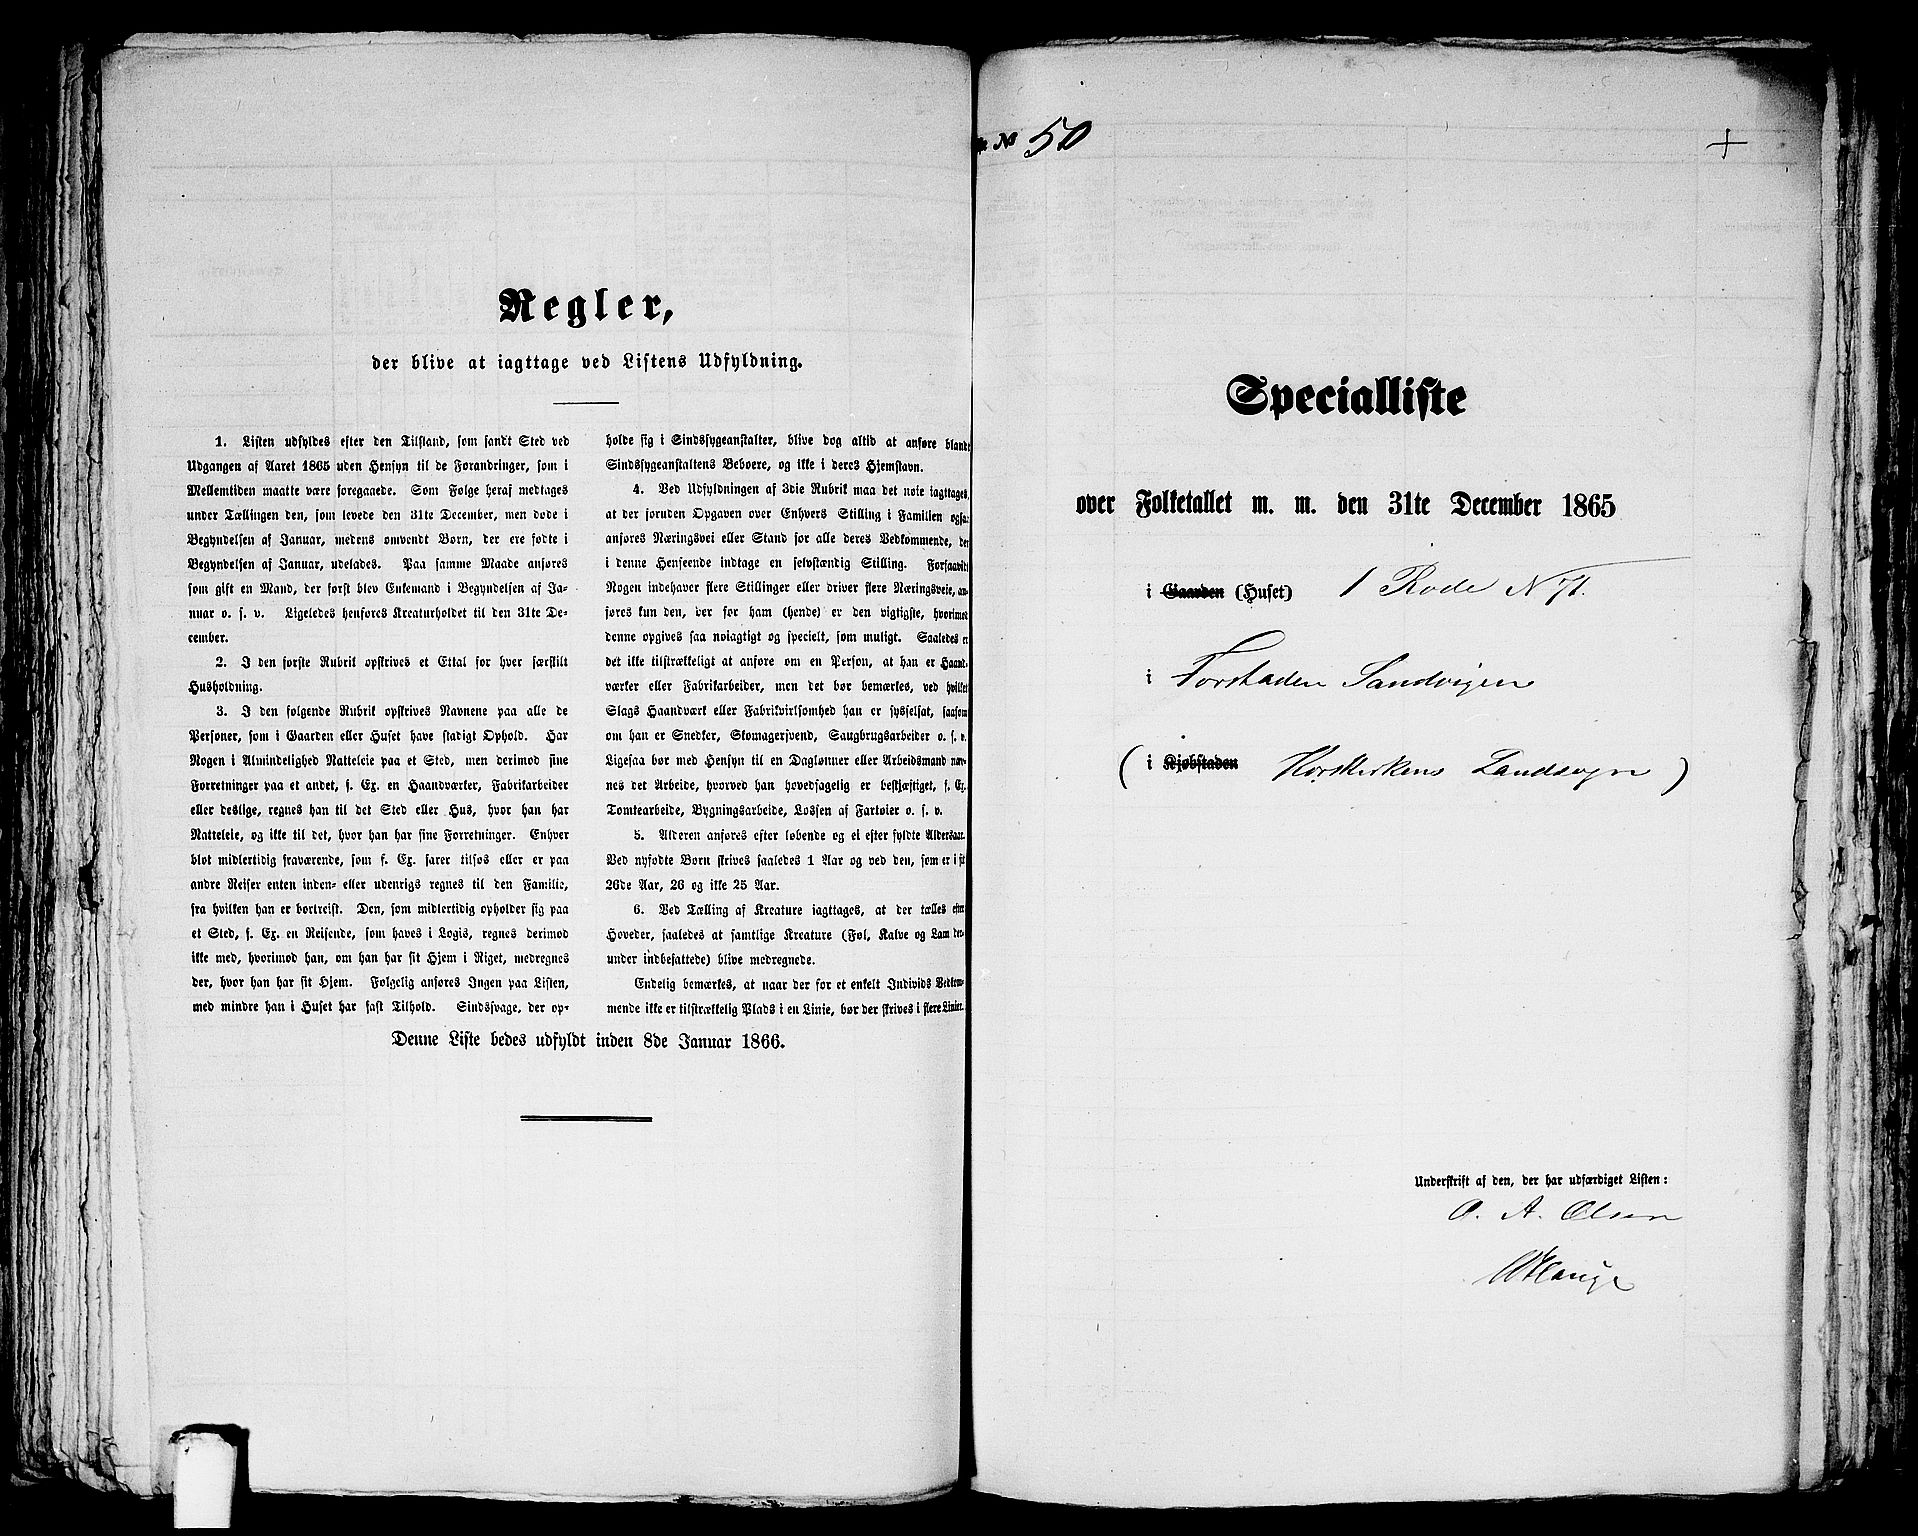 RA, Folketelling 1865 for 1281L Bergen Landdistrikt, Domkirkens landsokn og Korskirkens landsokn, 1865, s. 149